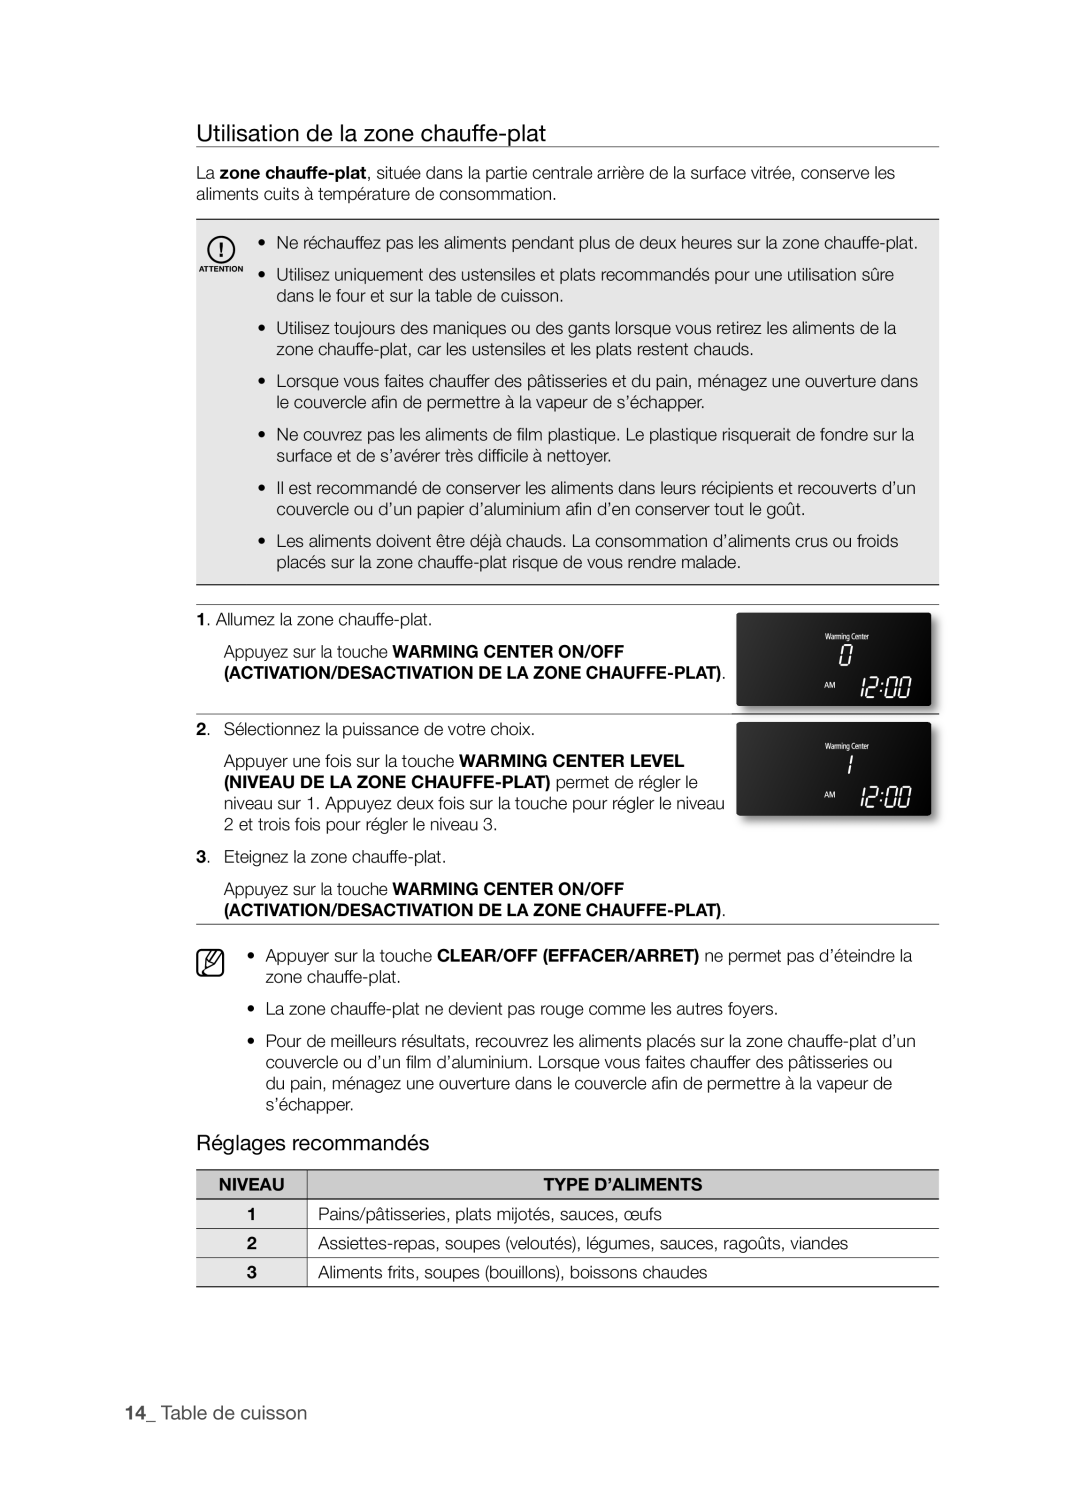 Samsung FTQ386LWX user manual Utilisation de la zone chauffe-plat, Réglages recommandés, 1_ Table de cuisson 